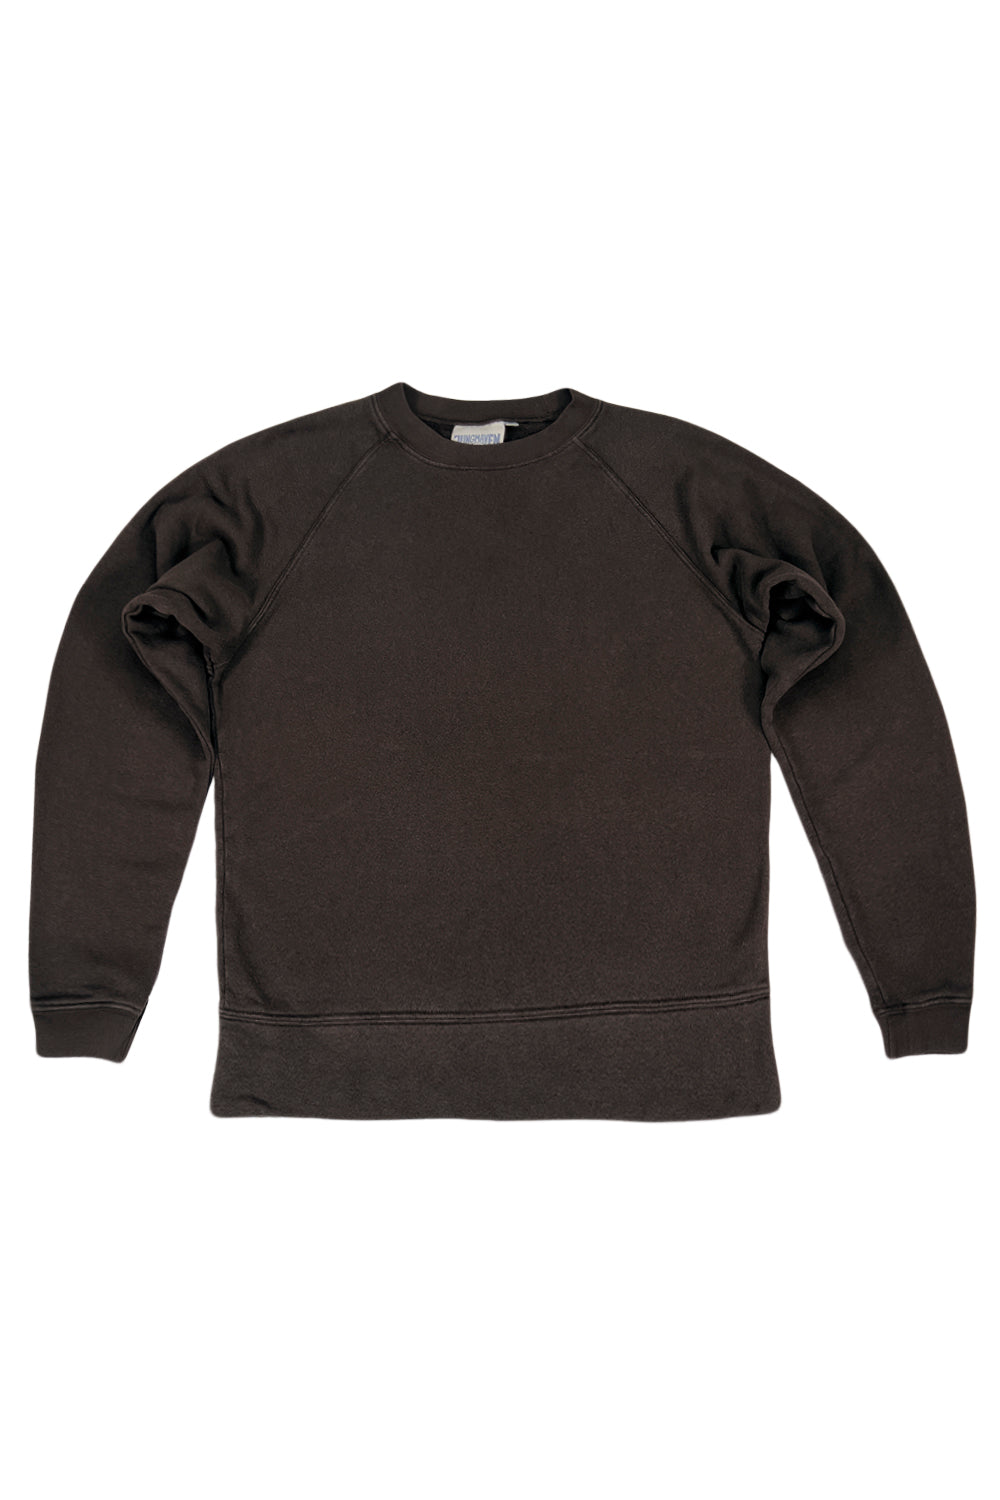 Sierra Raglan Sweatshirt - Sale Colors | Jungmaven Hemp Clothing & Accessories / Color: Coffee Bean